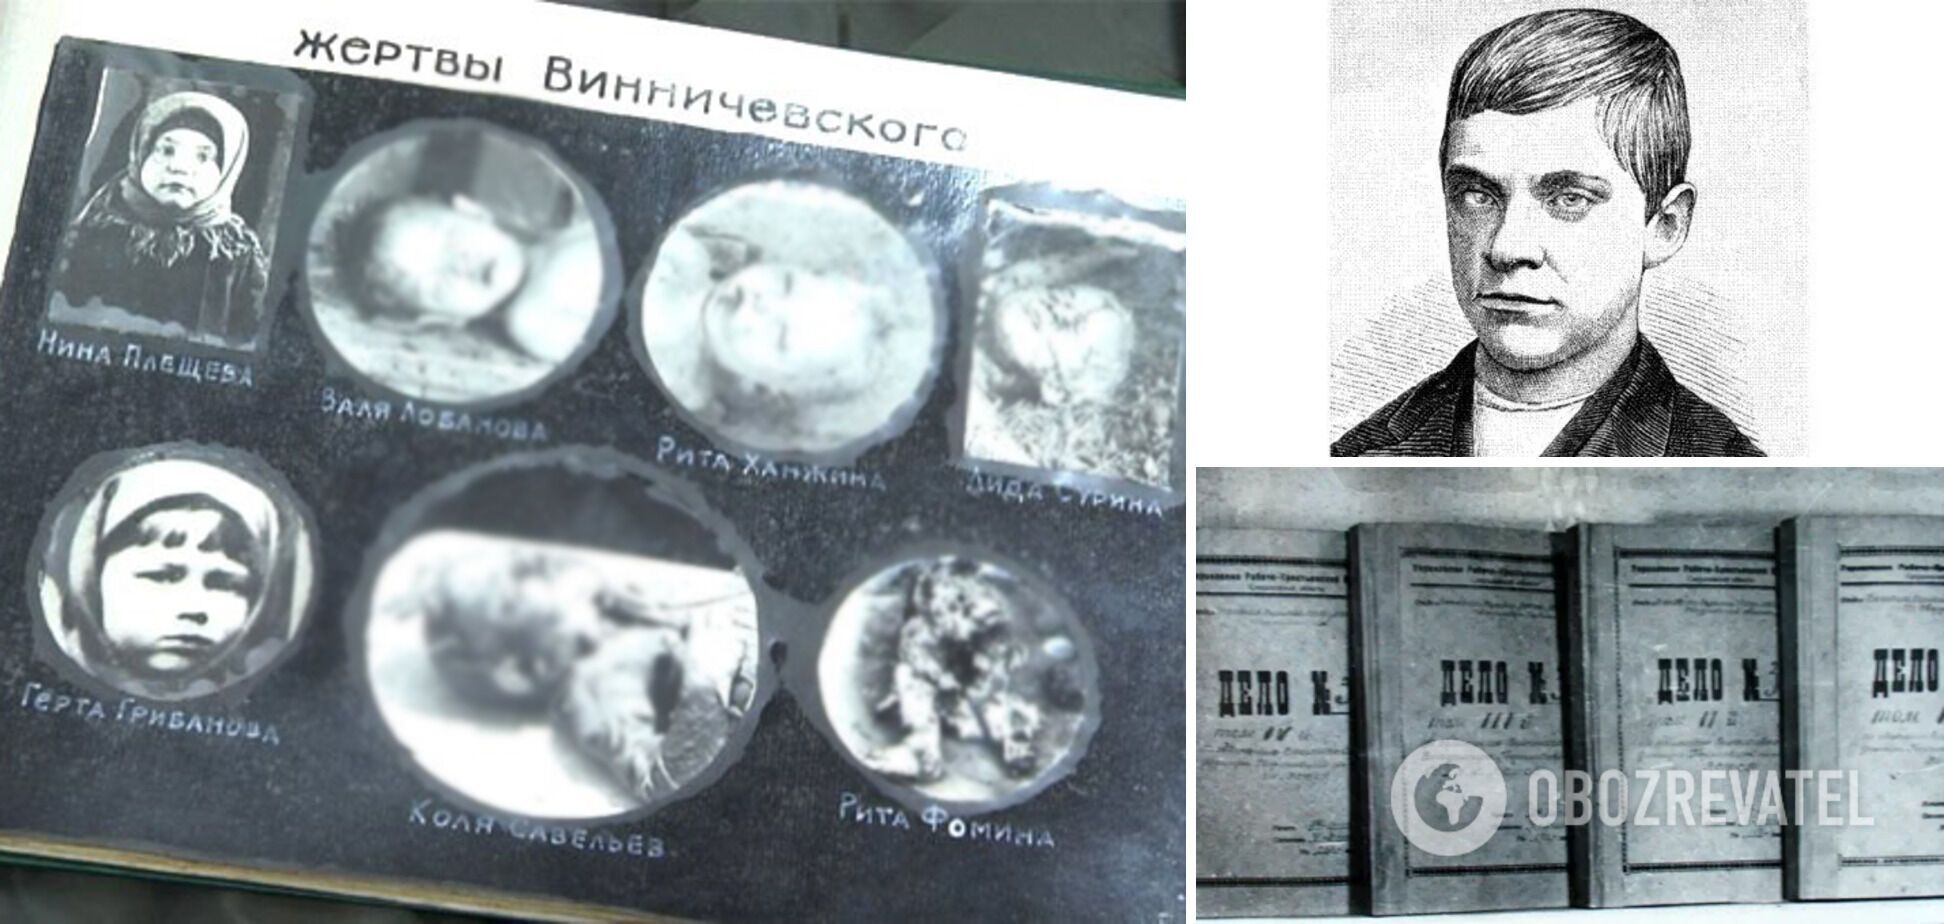 Жертвы Винничевского, его портрет, сделанный в ходе следствия, и четыре тома уголовного дела по маньяку